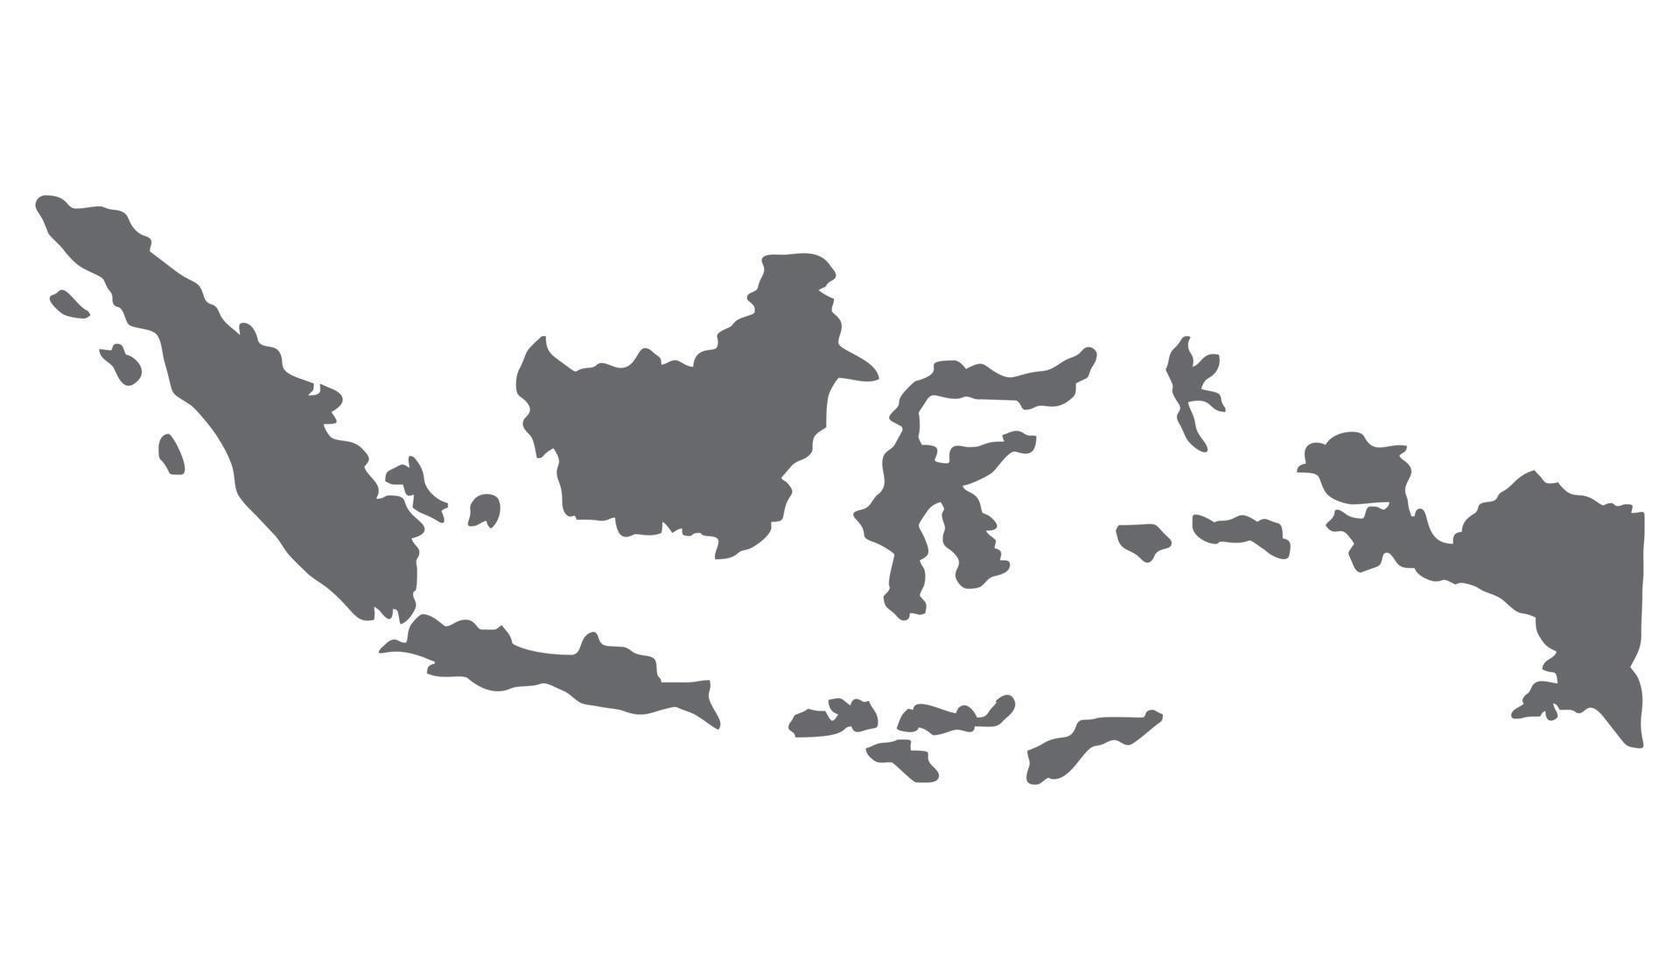 mapa da indonésia. de sabang a merauke. simples ícone plano cinza sobre fundo branco. silhueta de ilustração do país indonésia isolada no fundo branco. vetor